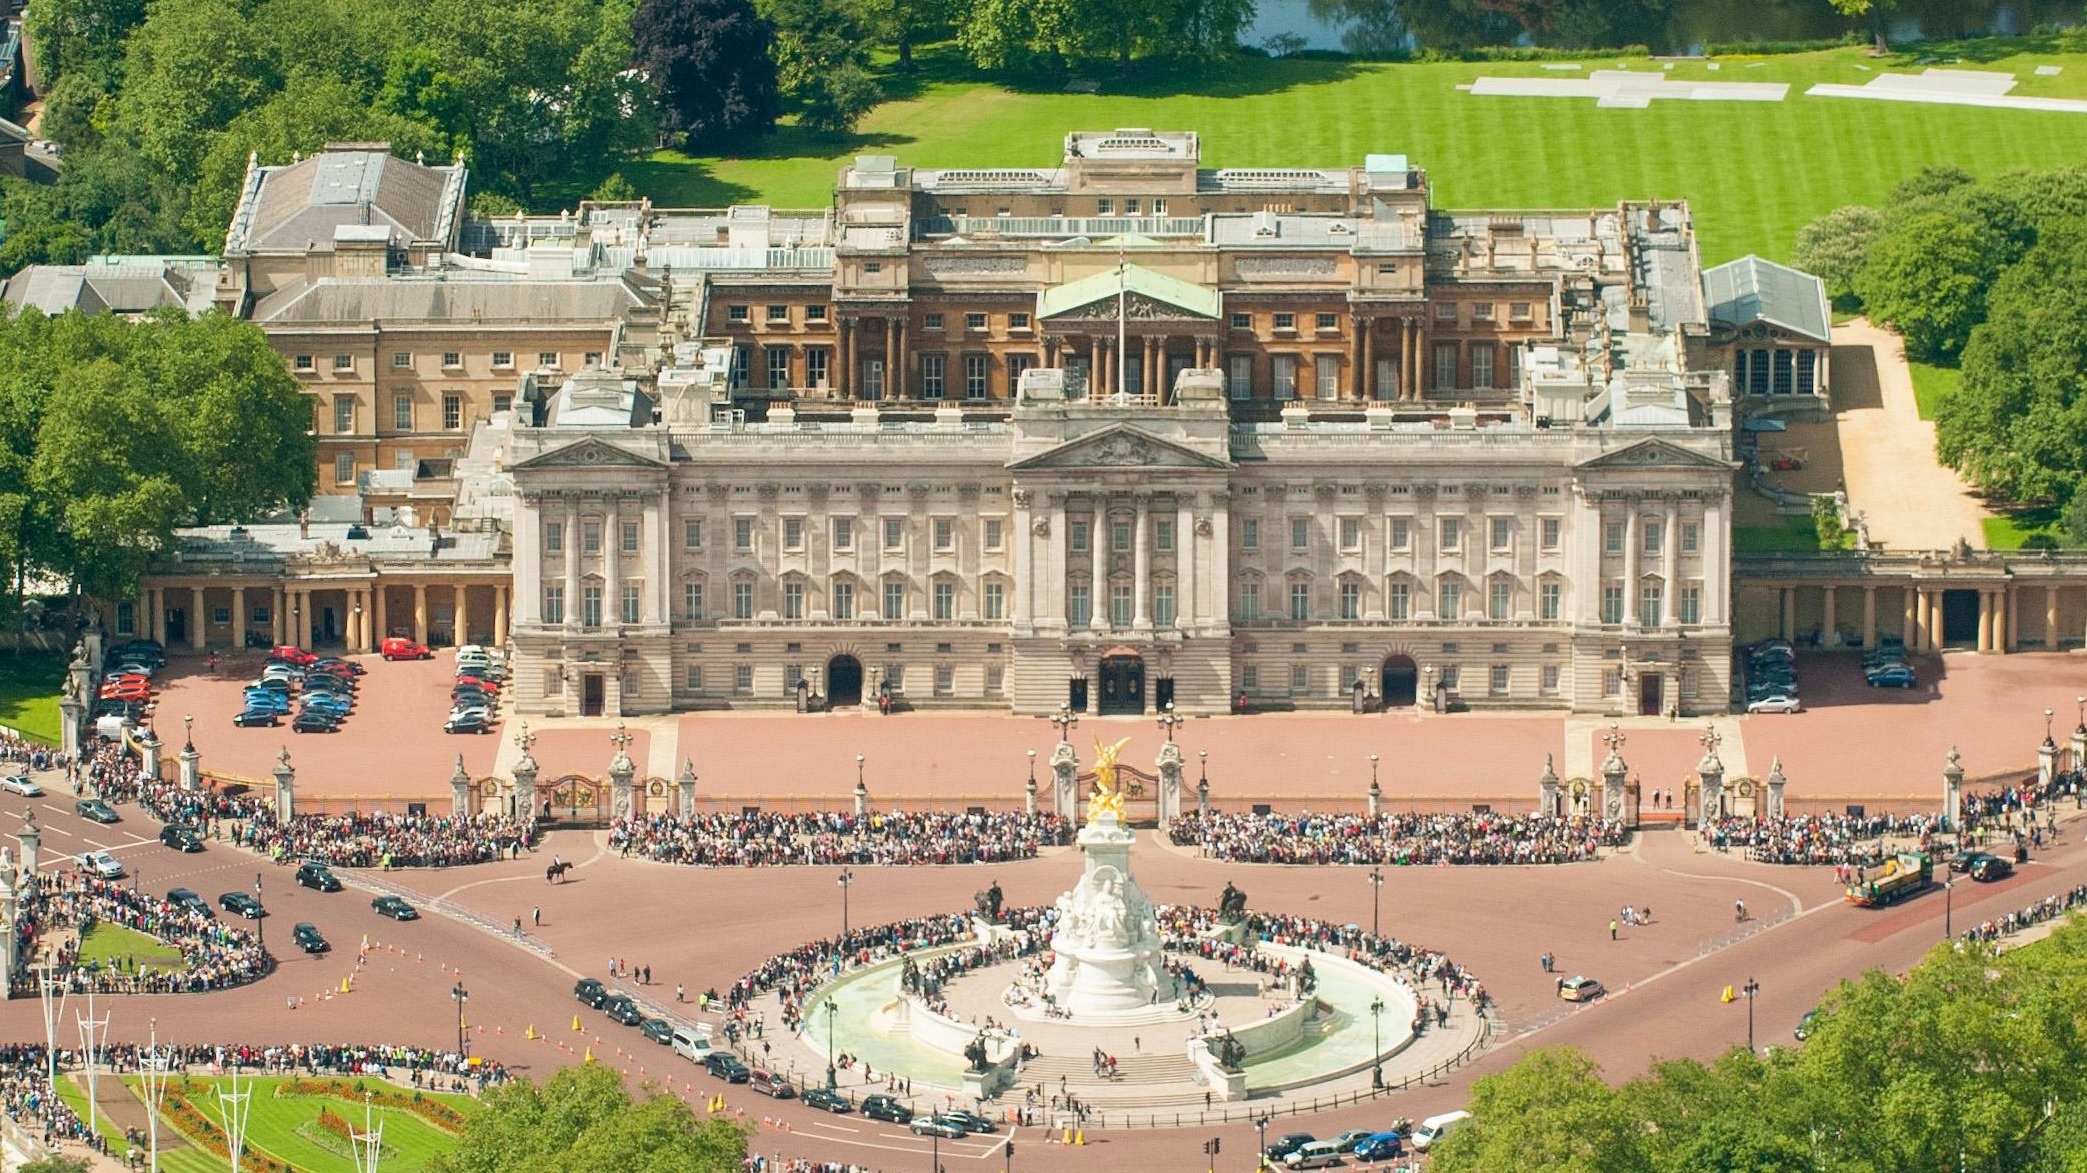 Лондон местонахождение королевской резиденции. Букингемский дворец (Buckingham Palace). Резиденция королевы Англии. Букингемский дворец резиденция королевы. Букингемский дворец – резиденция королевы Елизаветы II В Лондоне.